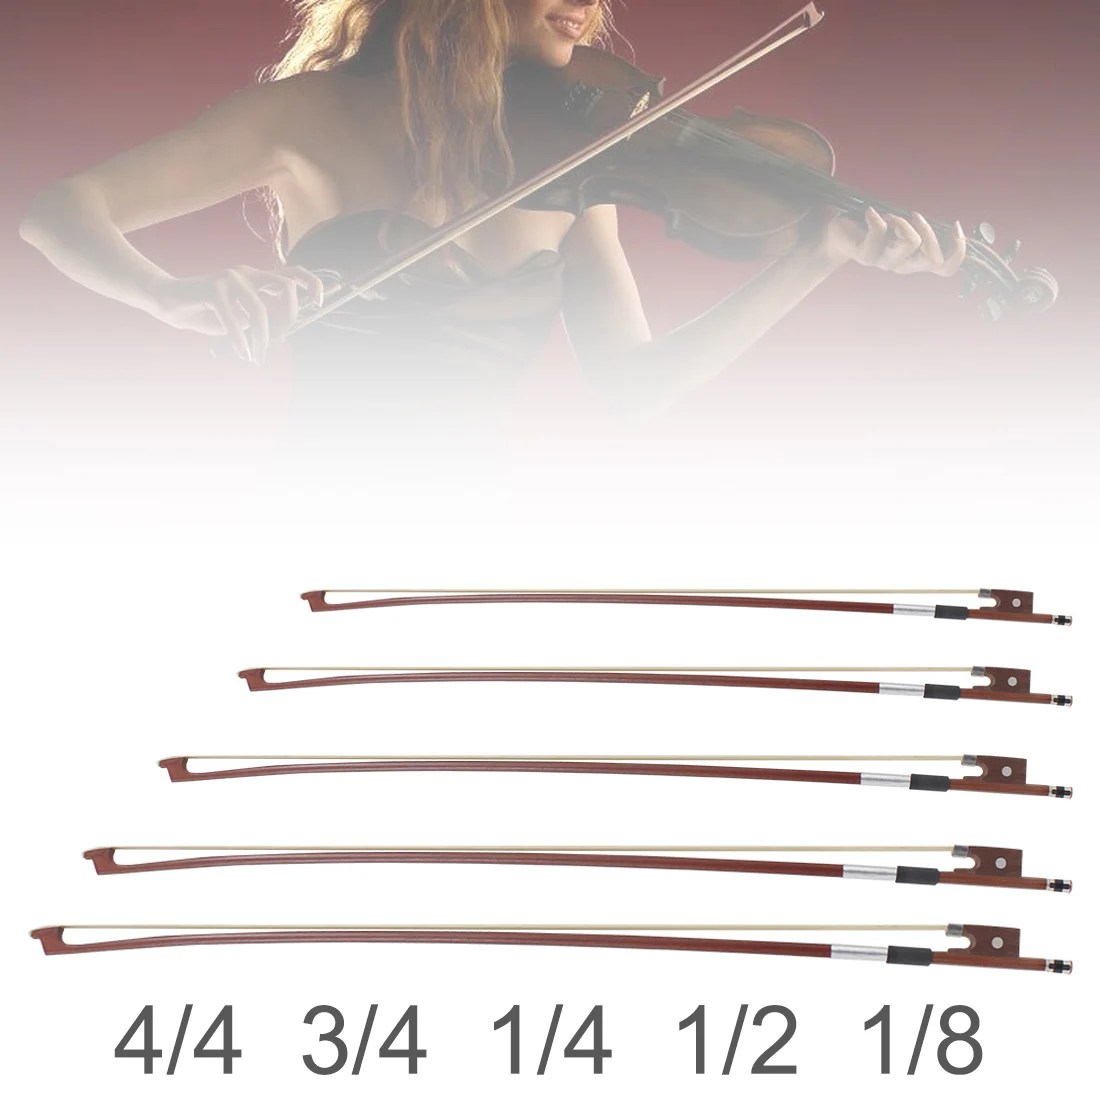 Jujuba Wood Frog Violino Bow, White Horsehair Fiddle Bow, Peças de instrumentos de cordas Peças, 4/4, 1/4, 1/2, 1/8